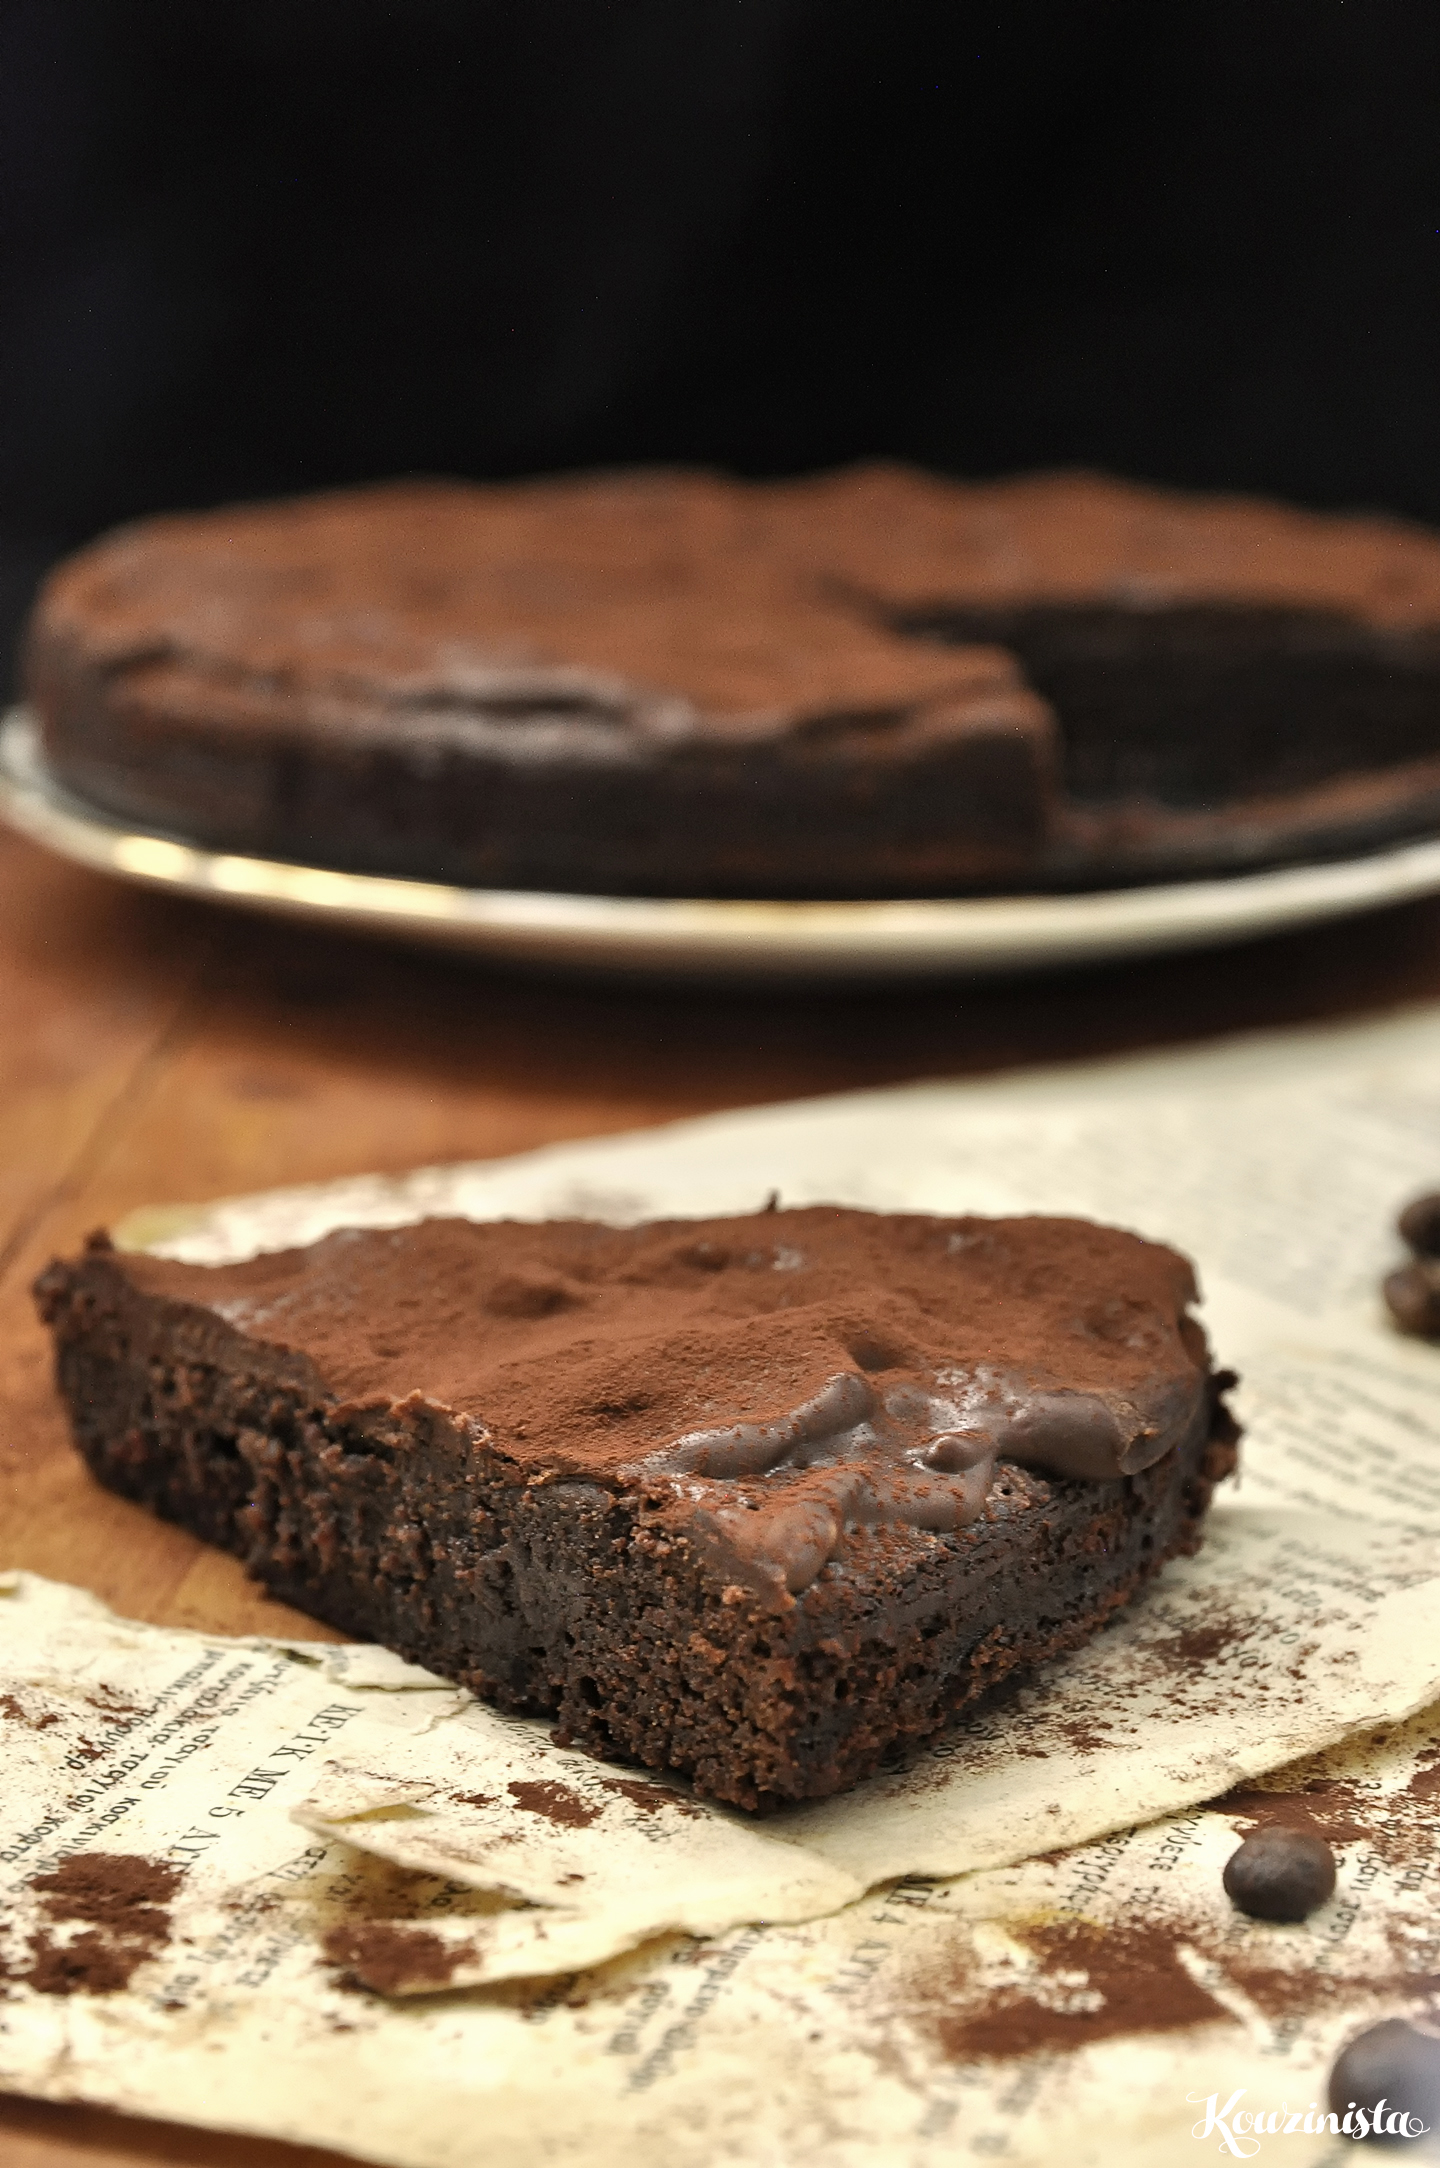 Σουηδικό κέικ/μπράουνις σοκολάτας / Swedish chocolate cake